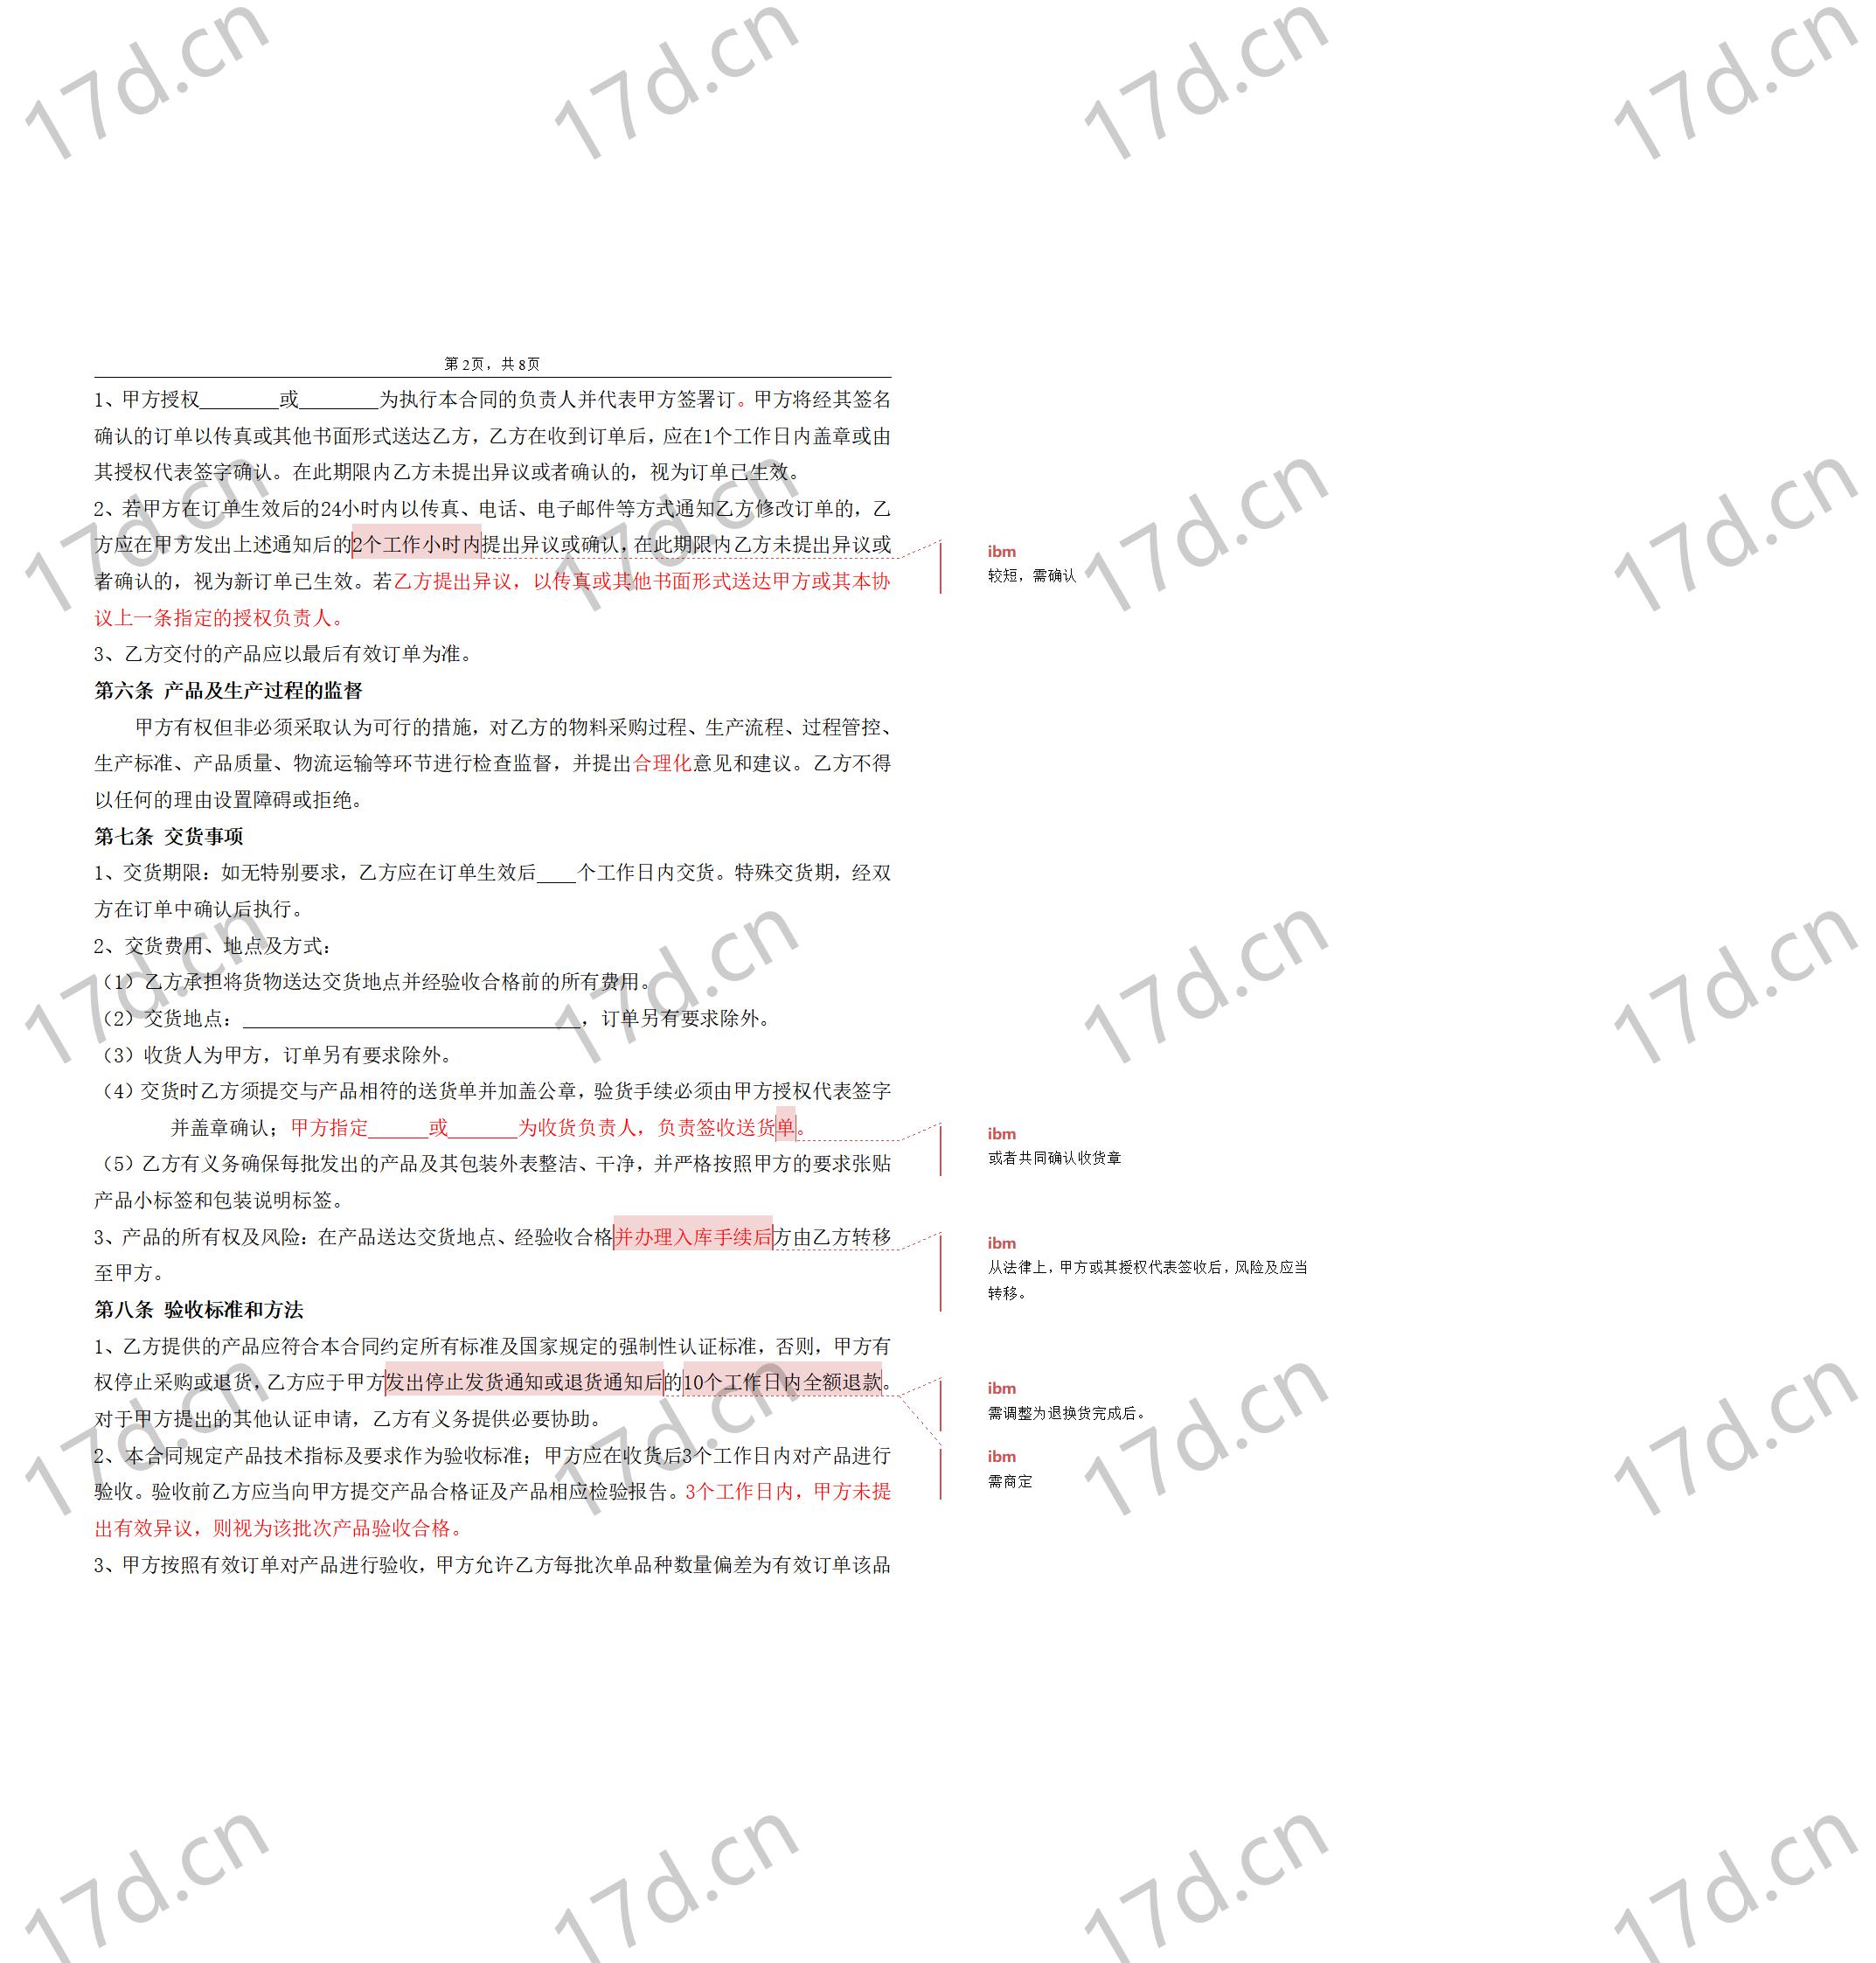 委托加工合同(OEM)2014-我方委托供应商生产加工_02.jpg